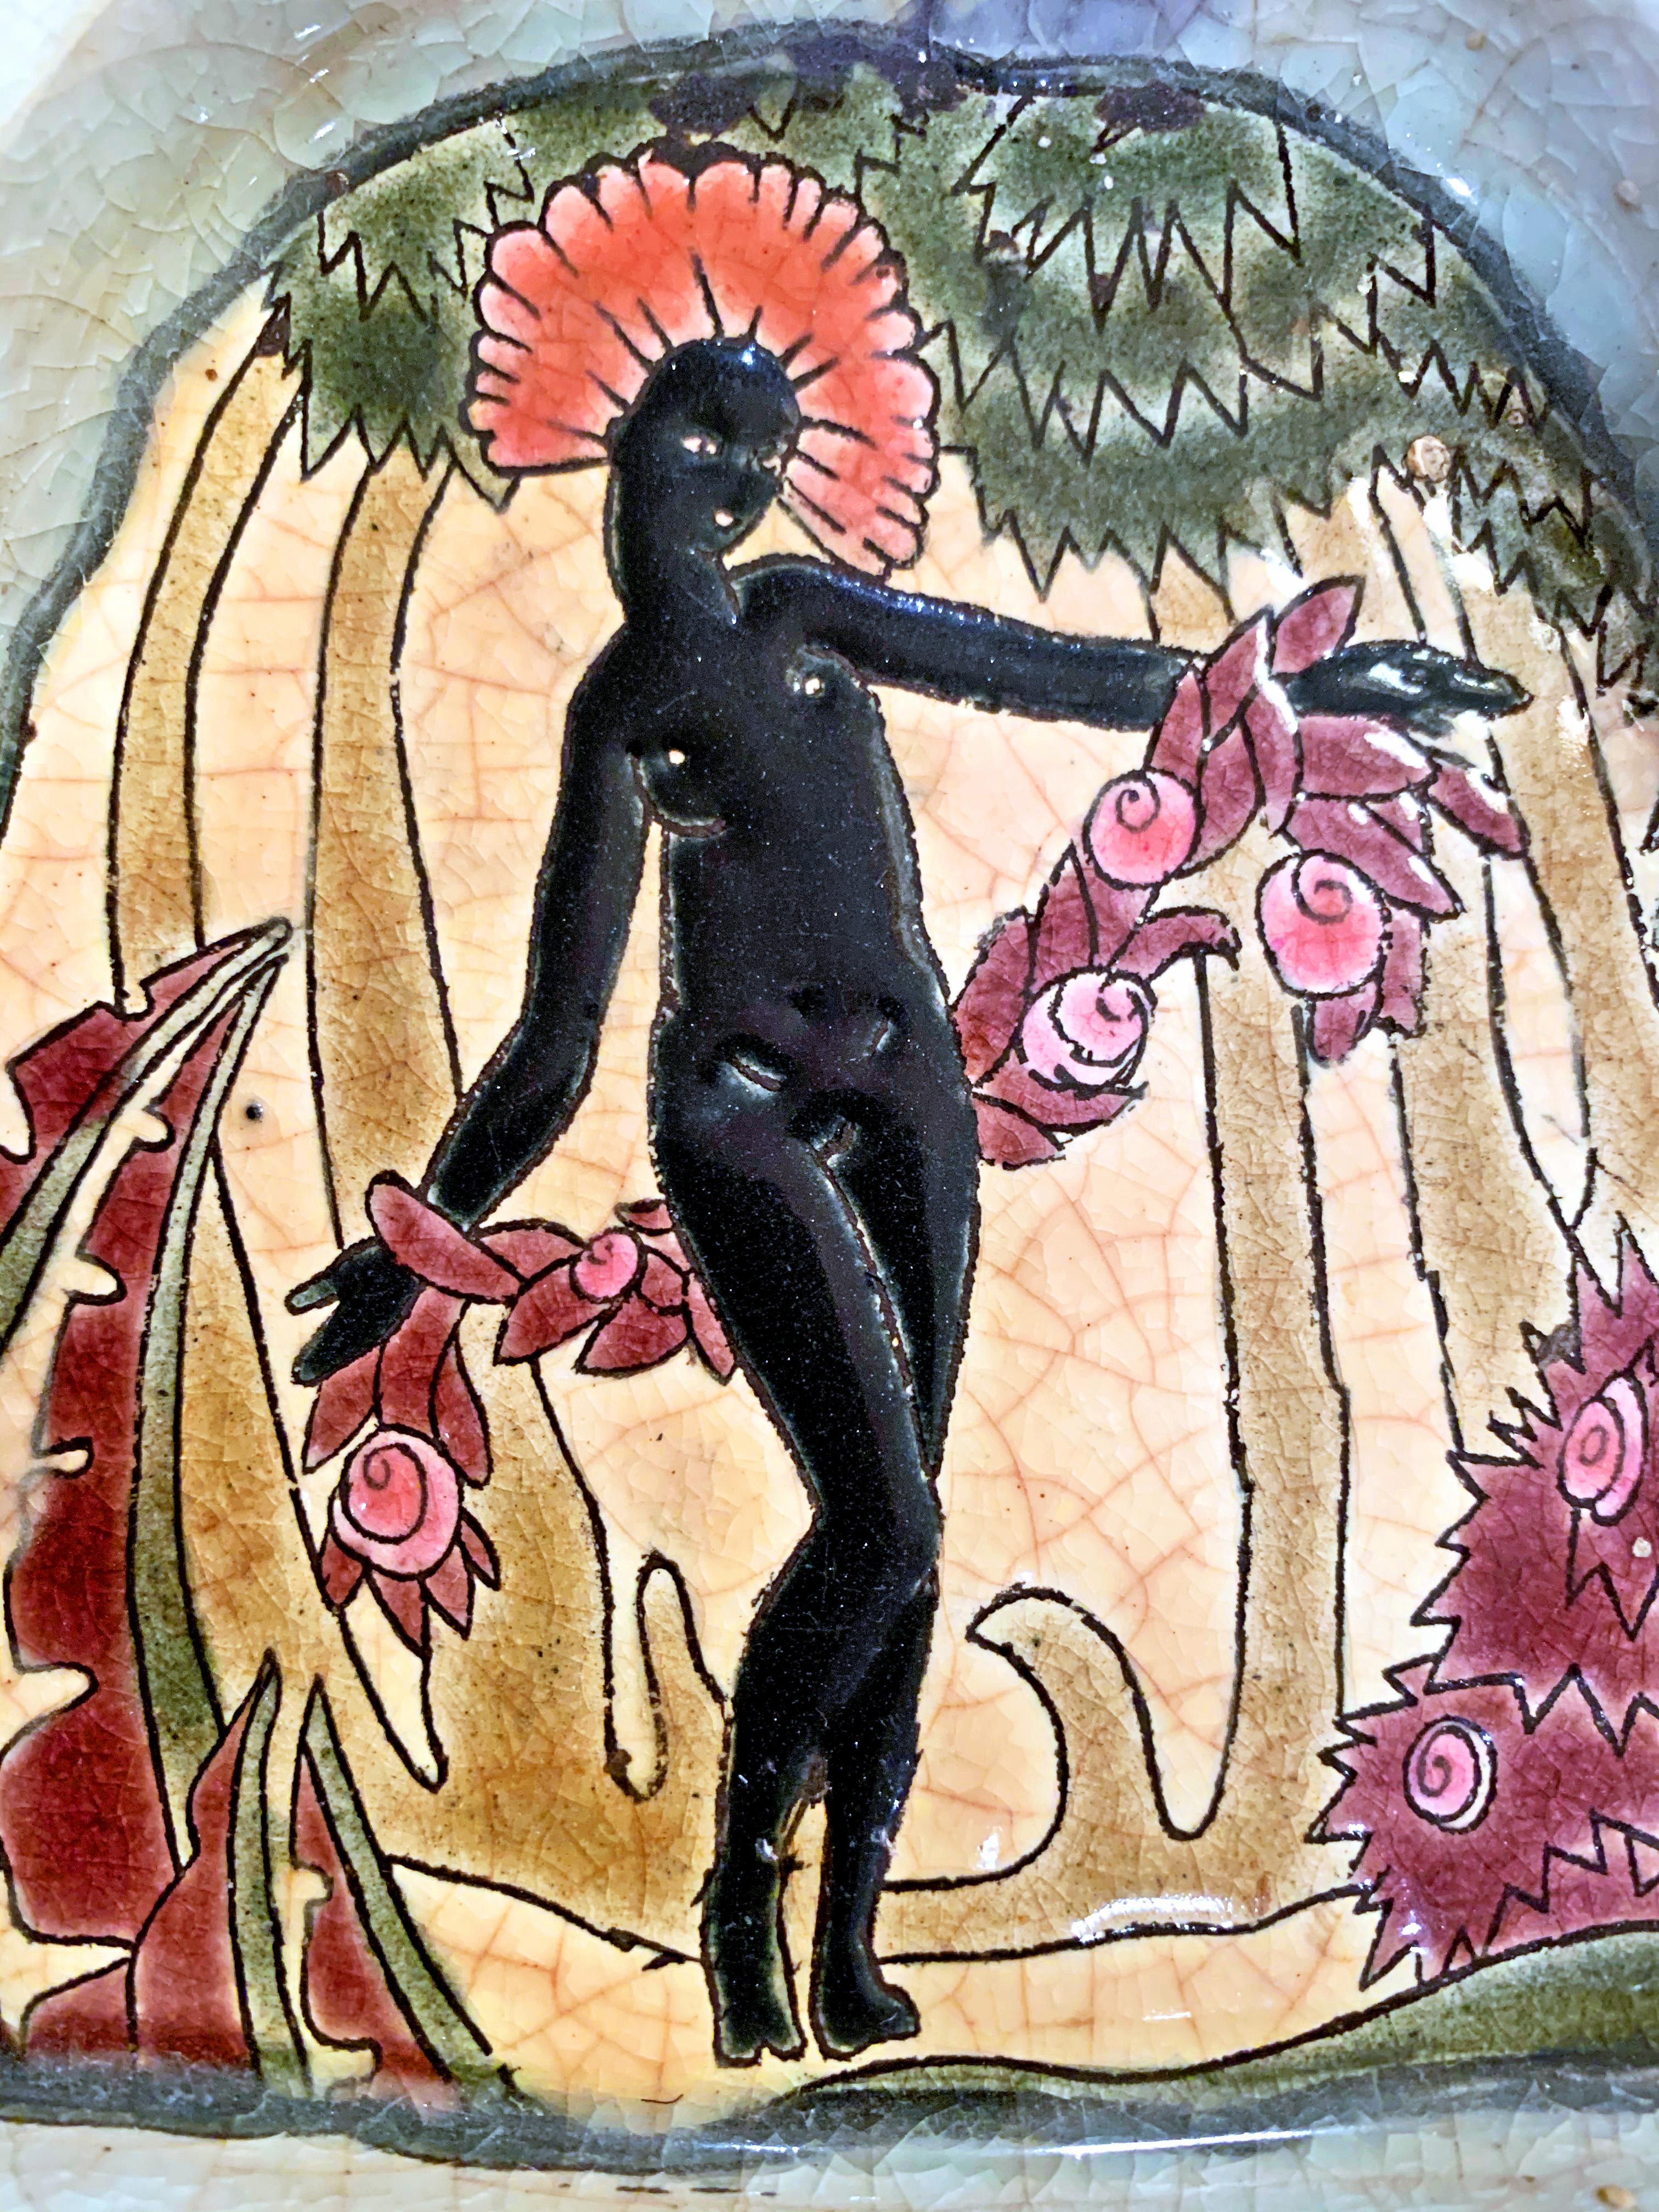 Brillamment émaillé dans des tons de corail, de noir de jais, de prune et de mousse, ce très rare plateau de courtoisie représente une figure féminine africaine avec une coiffe de plumes et des guirlandes de fleurs, dans un décor tropical encadré de